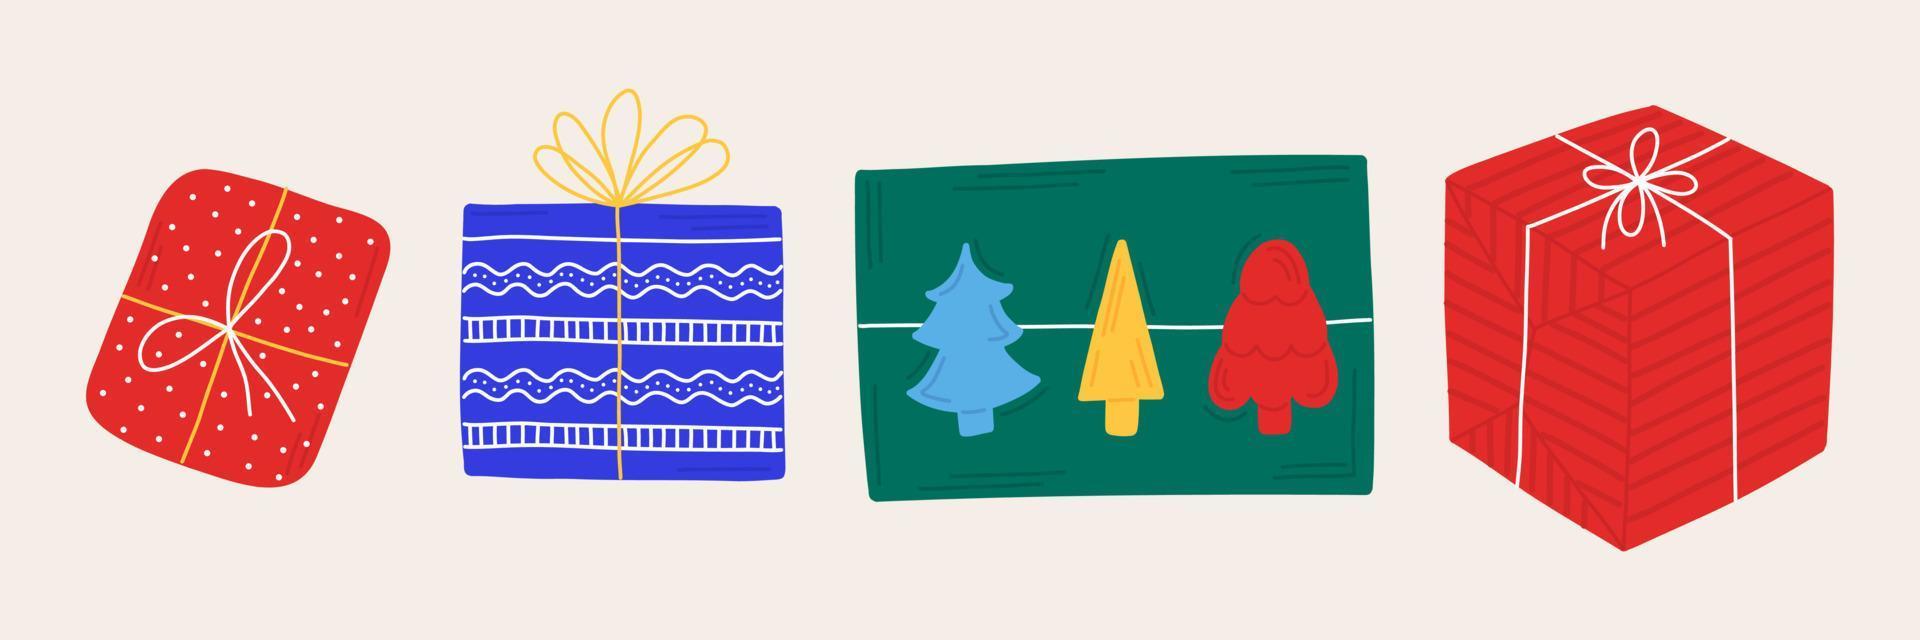 nieuw jaar reeks Kerstmis cadeaus en presenteert in hand- getrokken stijl met ornament. geïsoleerd pictogrammen, stickers, elementen voor de ontwerp van brochures, ansichtkaarten, affiches, uitnodigingen. vector